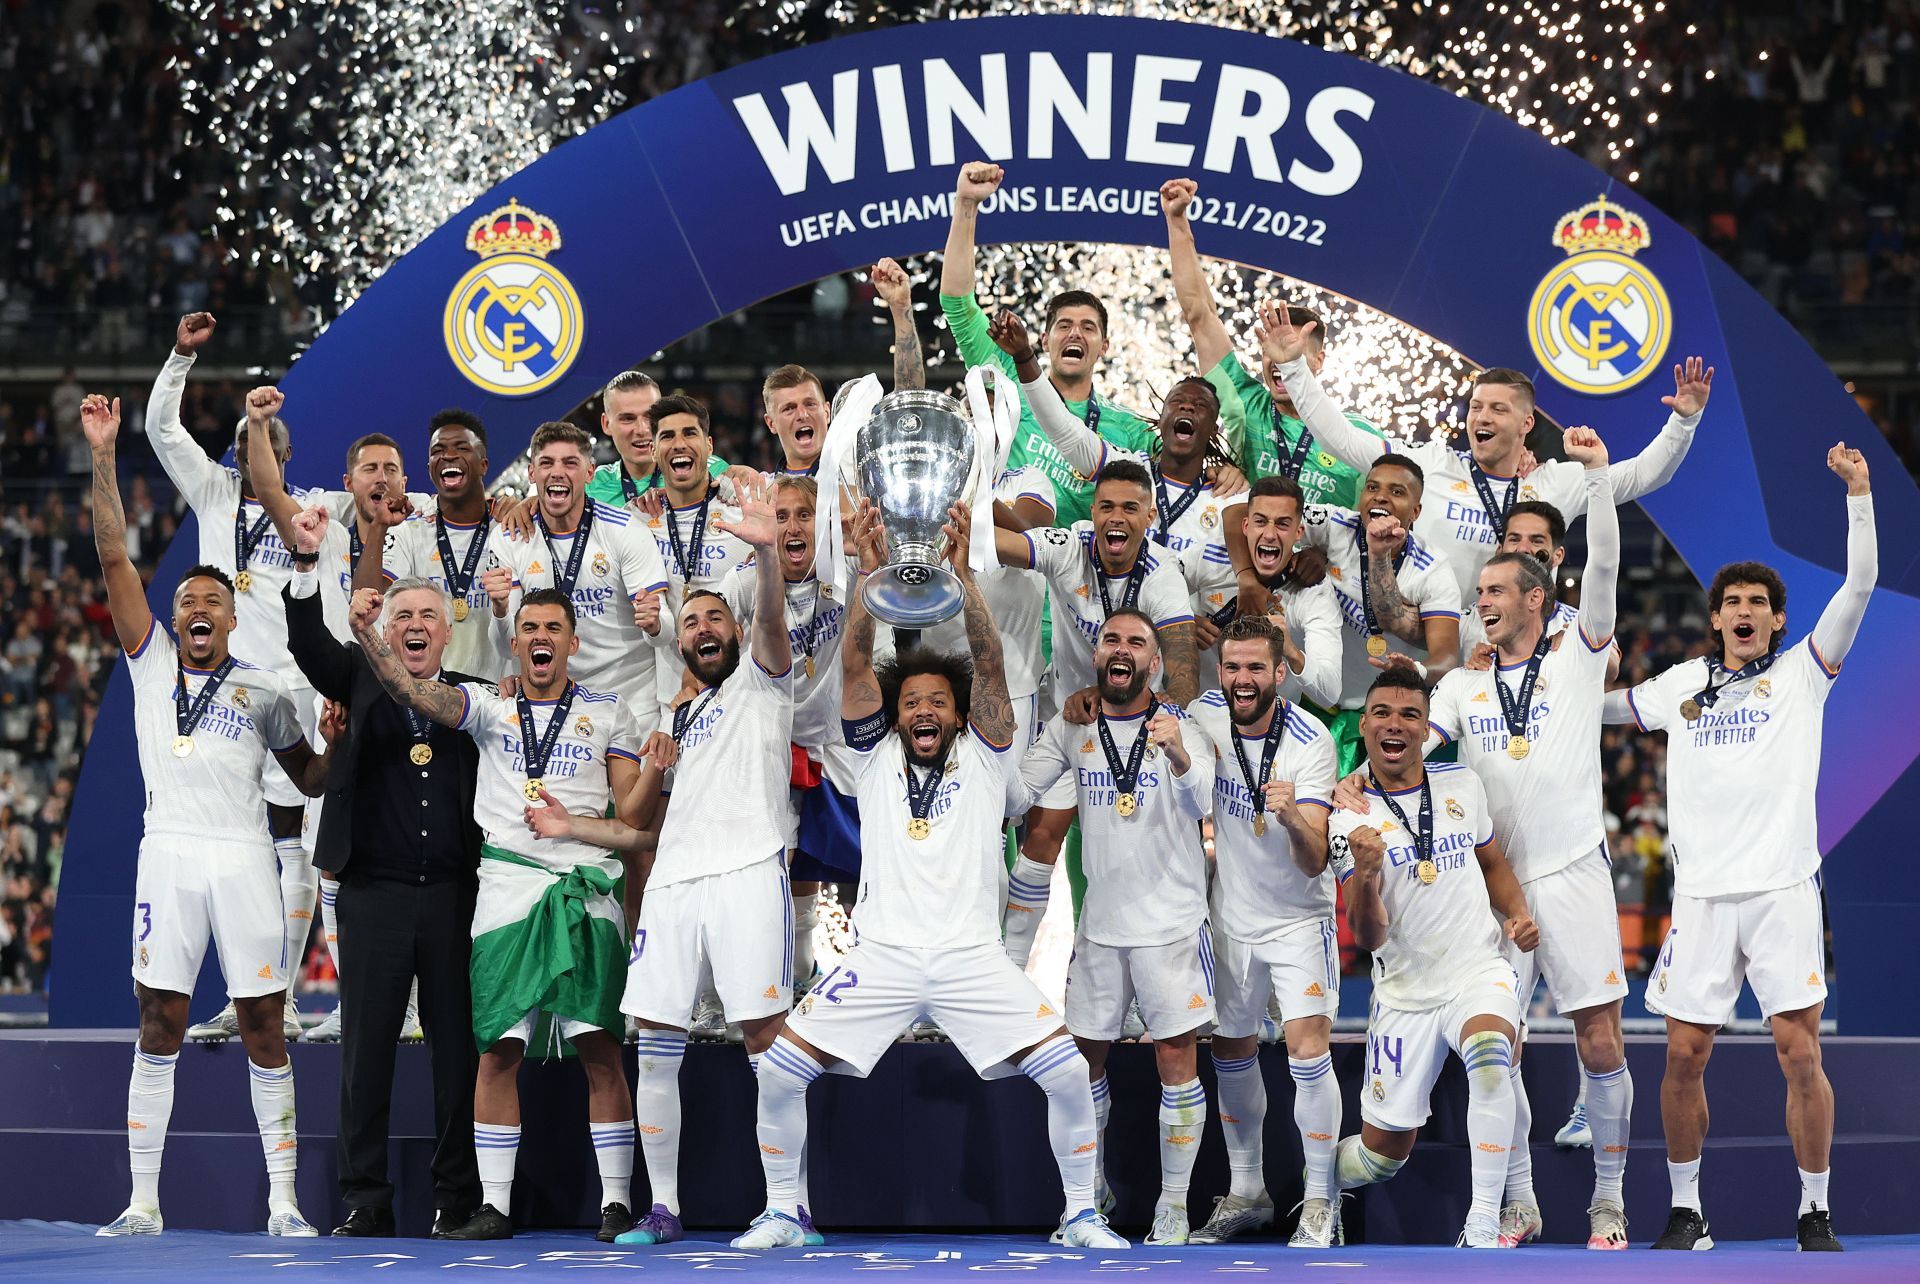 Real Madrid won the UEFA Champions League last season.